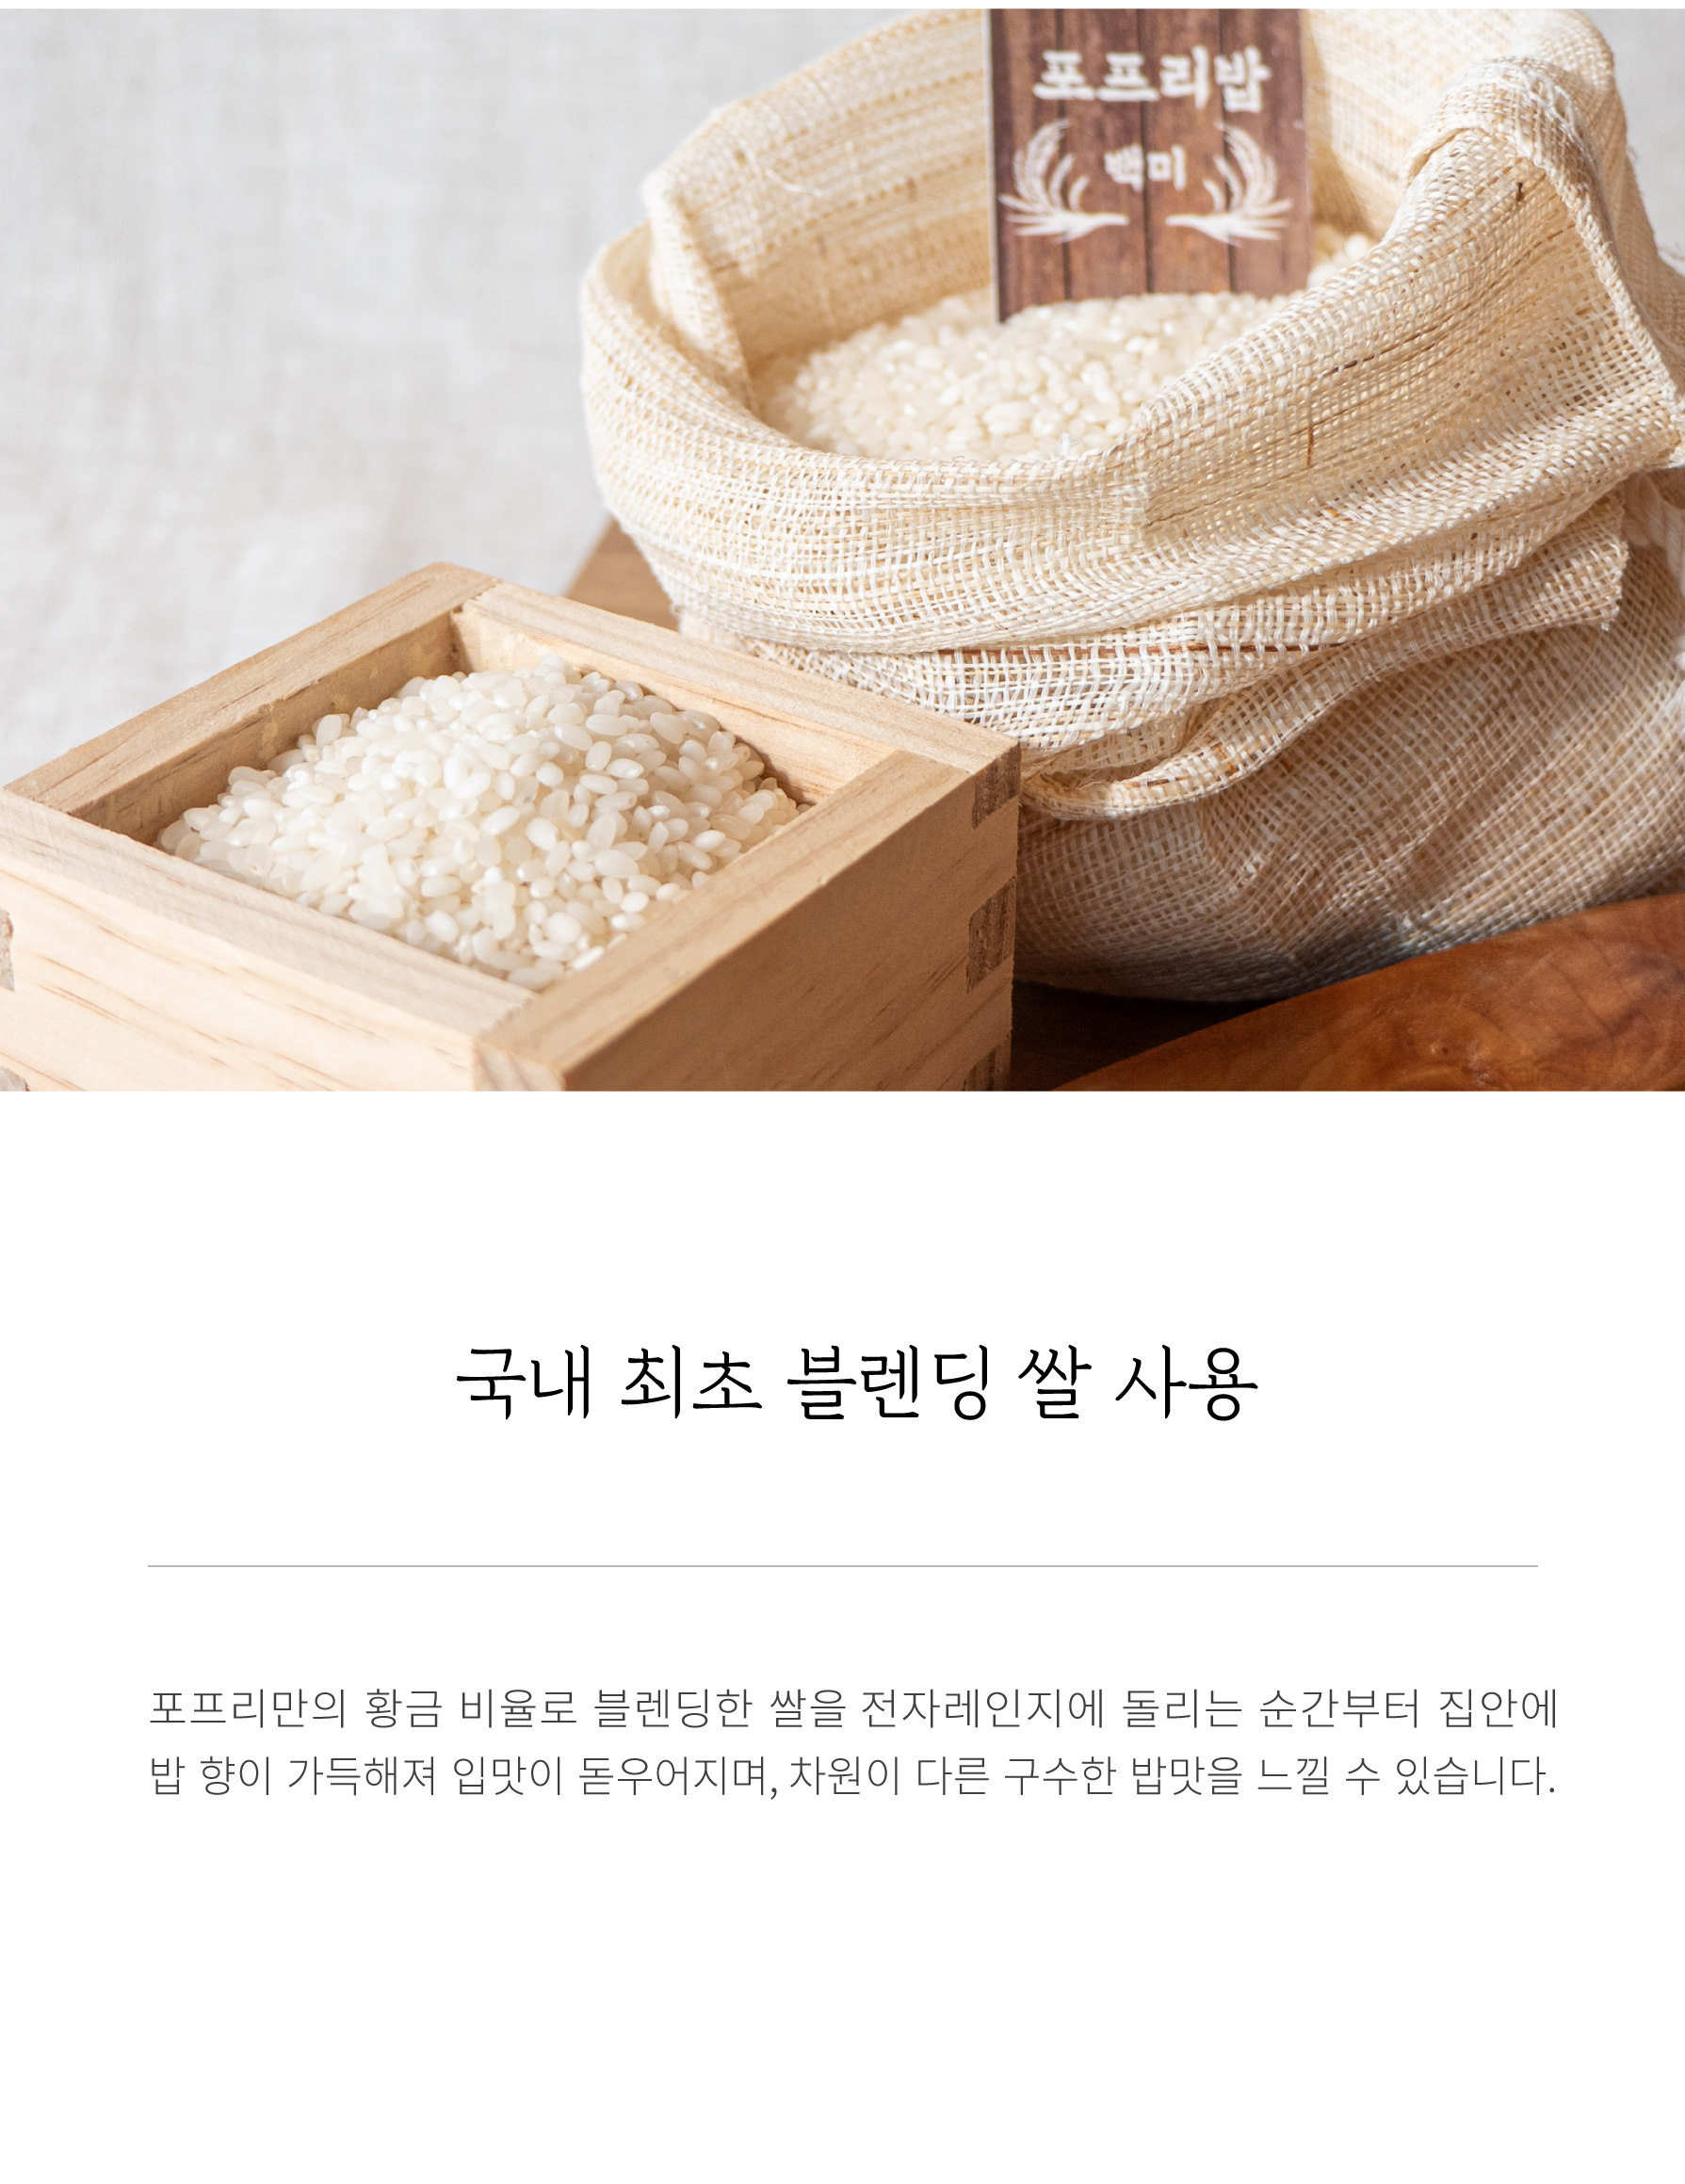 국내 최초 블렌딩 쌀 사용